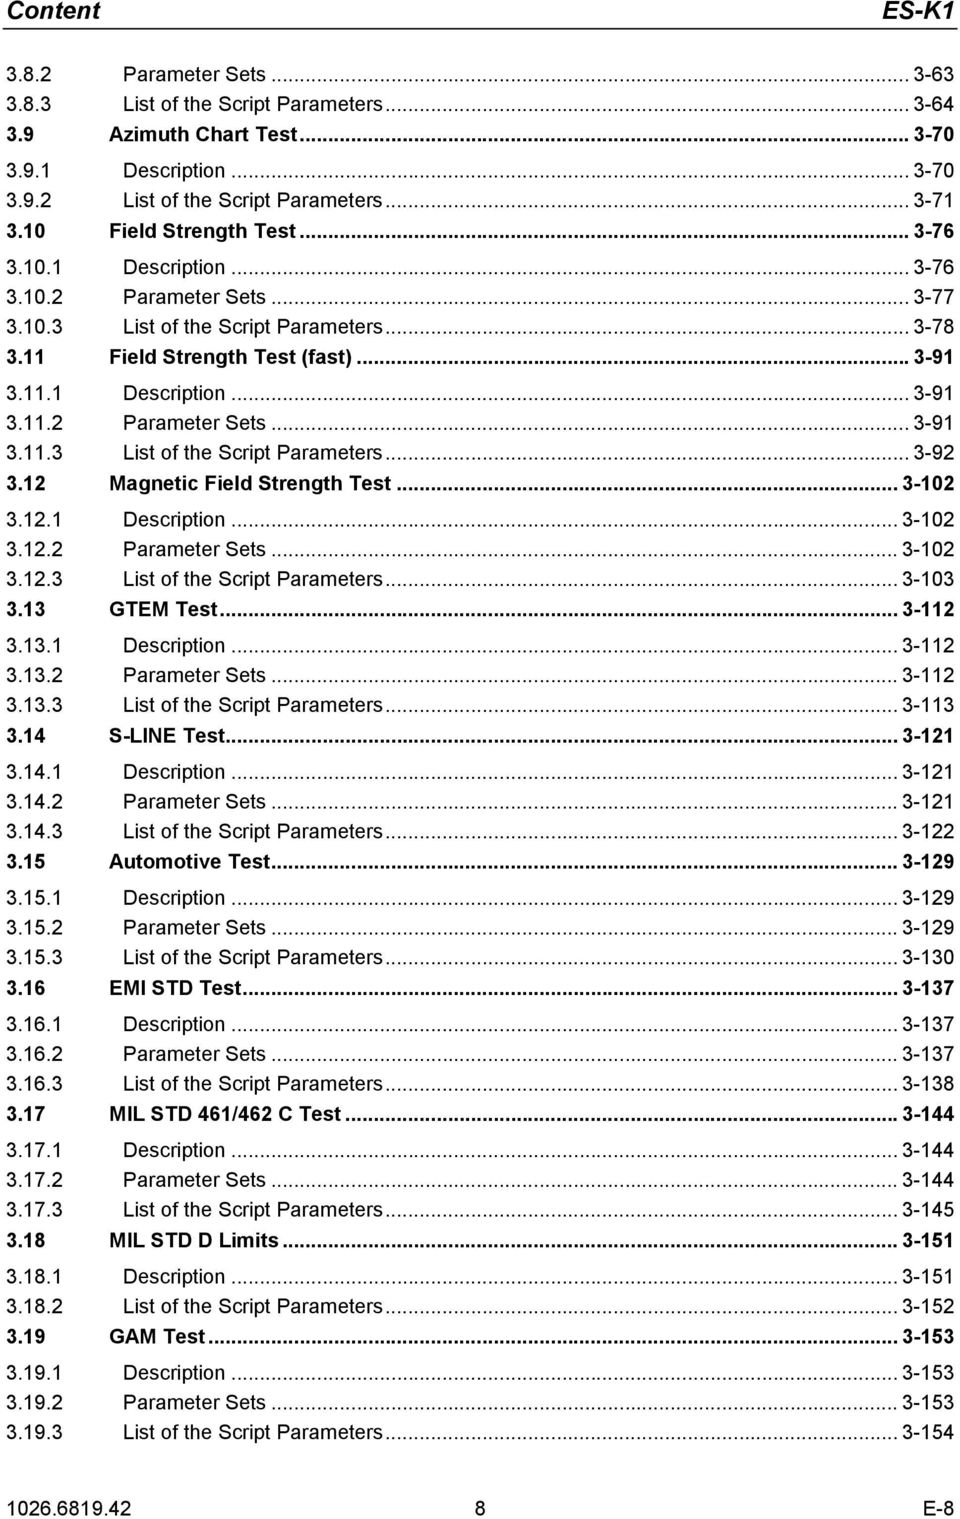 12 Magnetic Field Strength Test... 3-102 3.12.1 Description... 3-102 3.12.2 Parameter Sets... 3-102 3.12.3 List of the Script Parameters... 3-103 3.13 GTEM Test... 3-112 3.13.1 Description... 3-112 3.13.2 Parameter Sets... 3-112 3.13.3 List of the Script Parameters... 3-113 3.